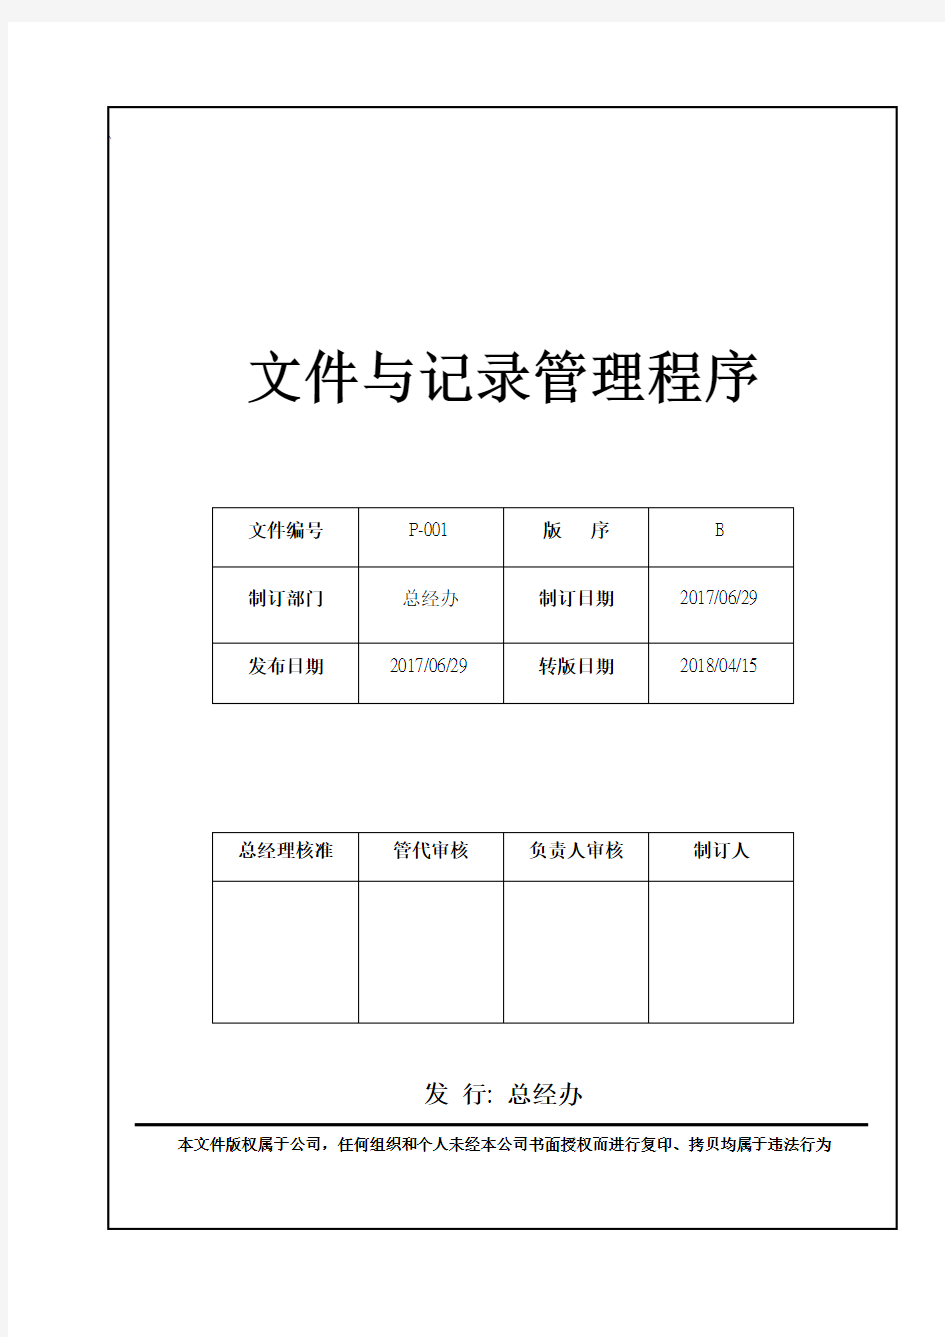 文件与记录管理程序(中文版)